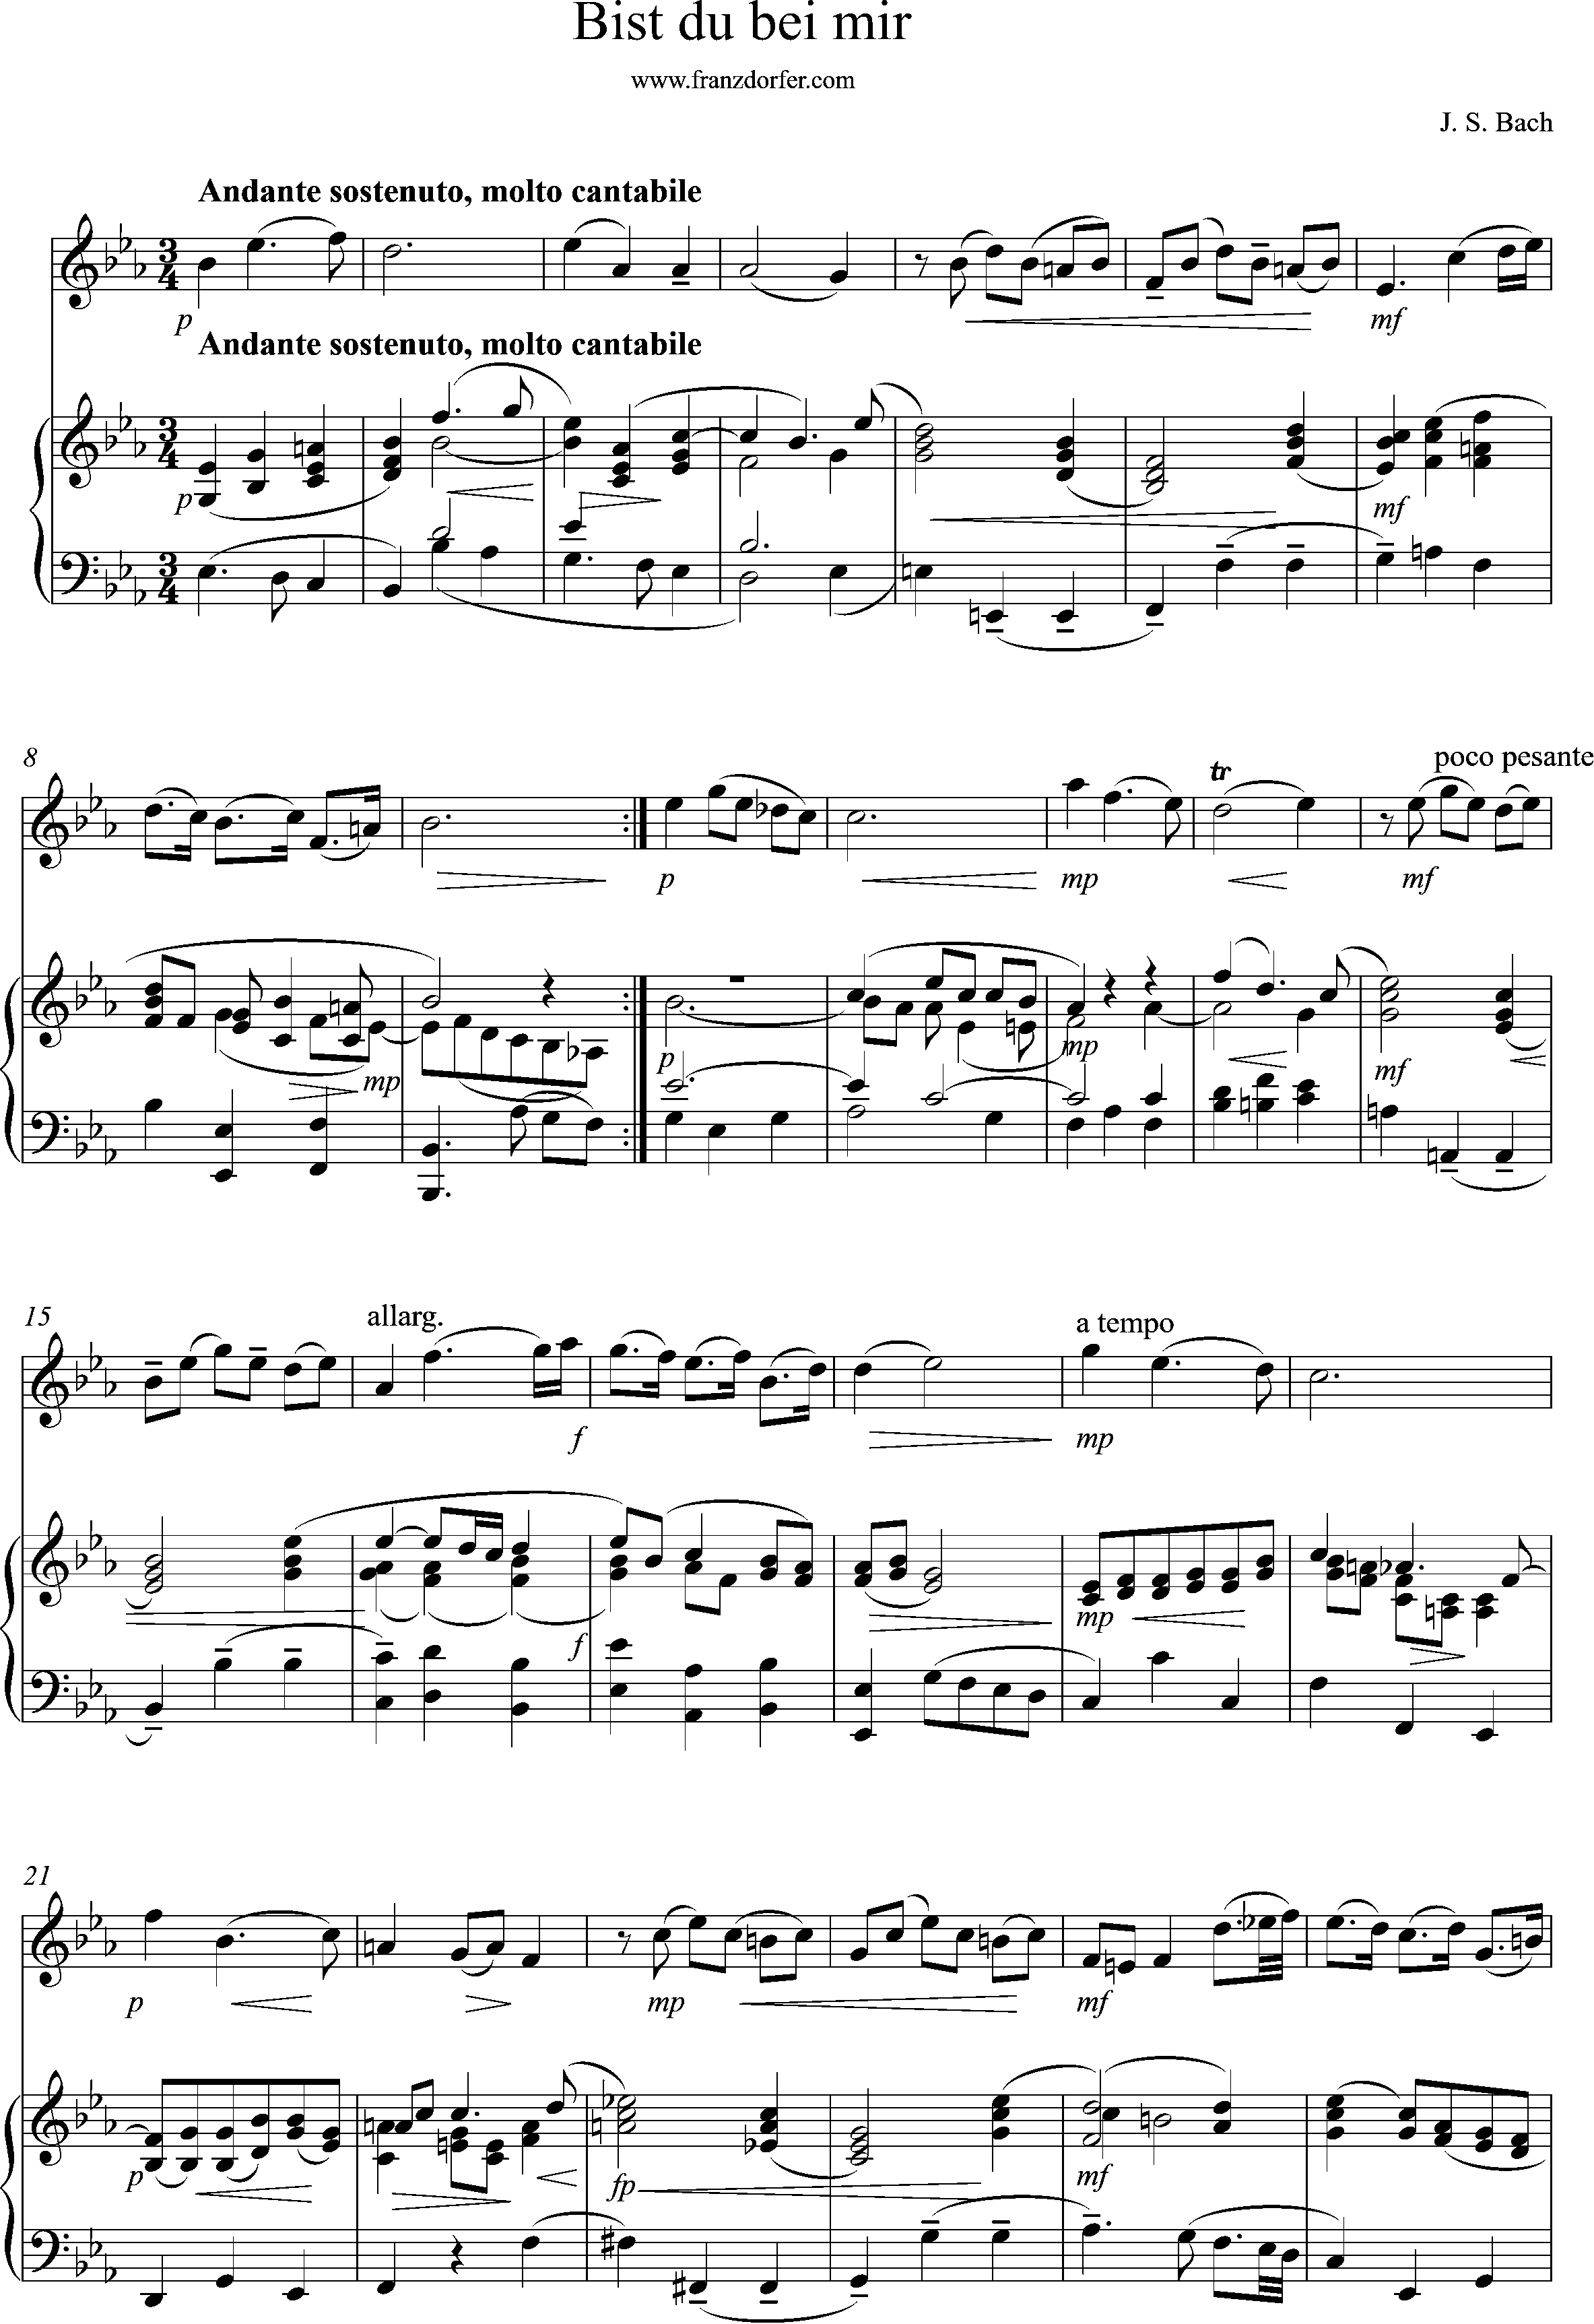 Klaviernoten, Bist du bei mir, BWV508